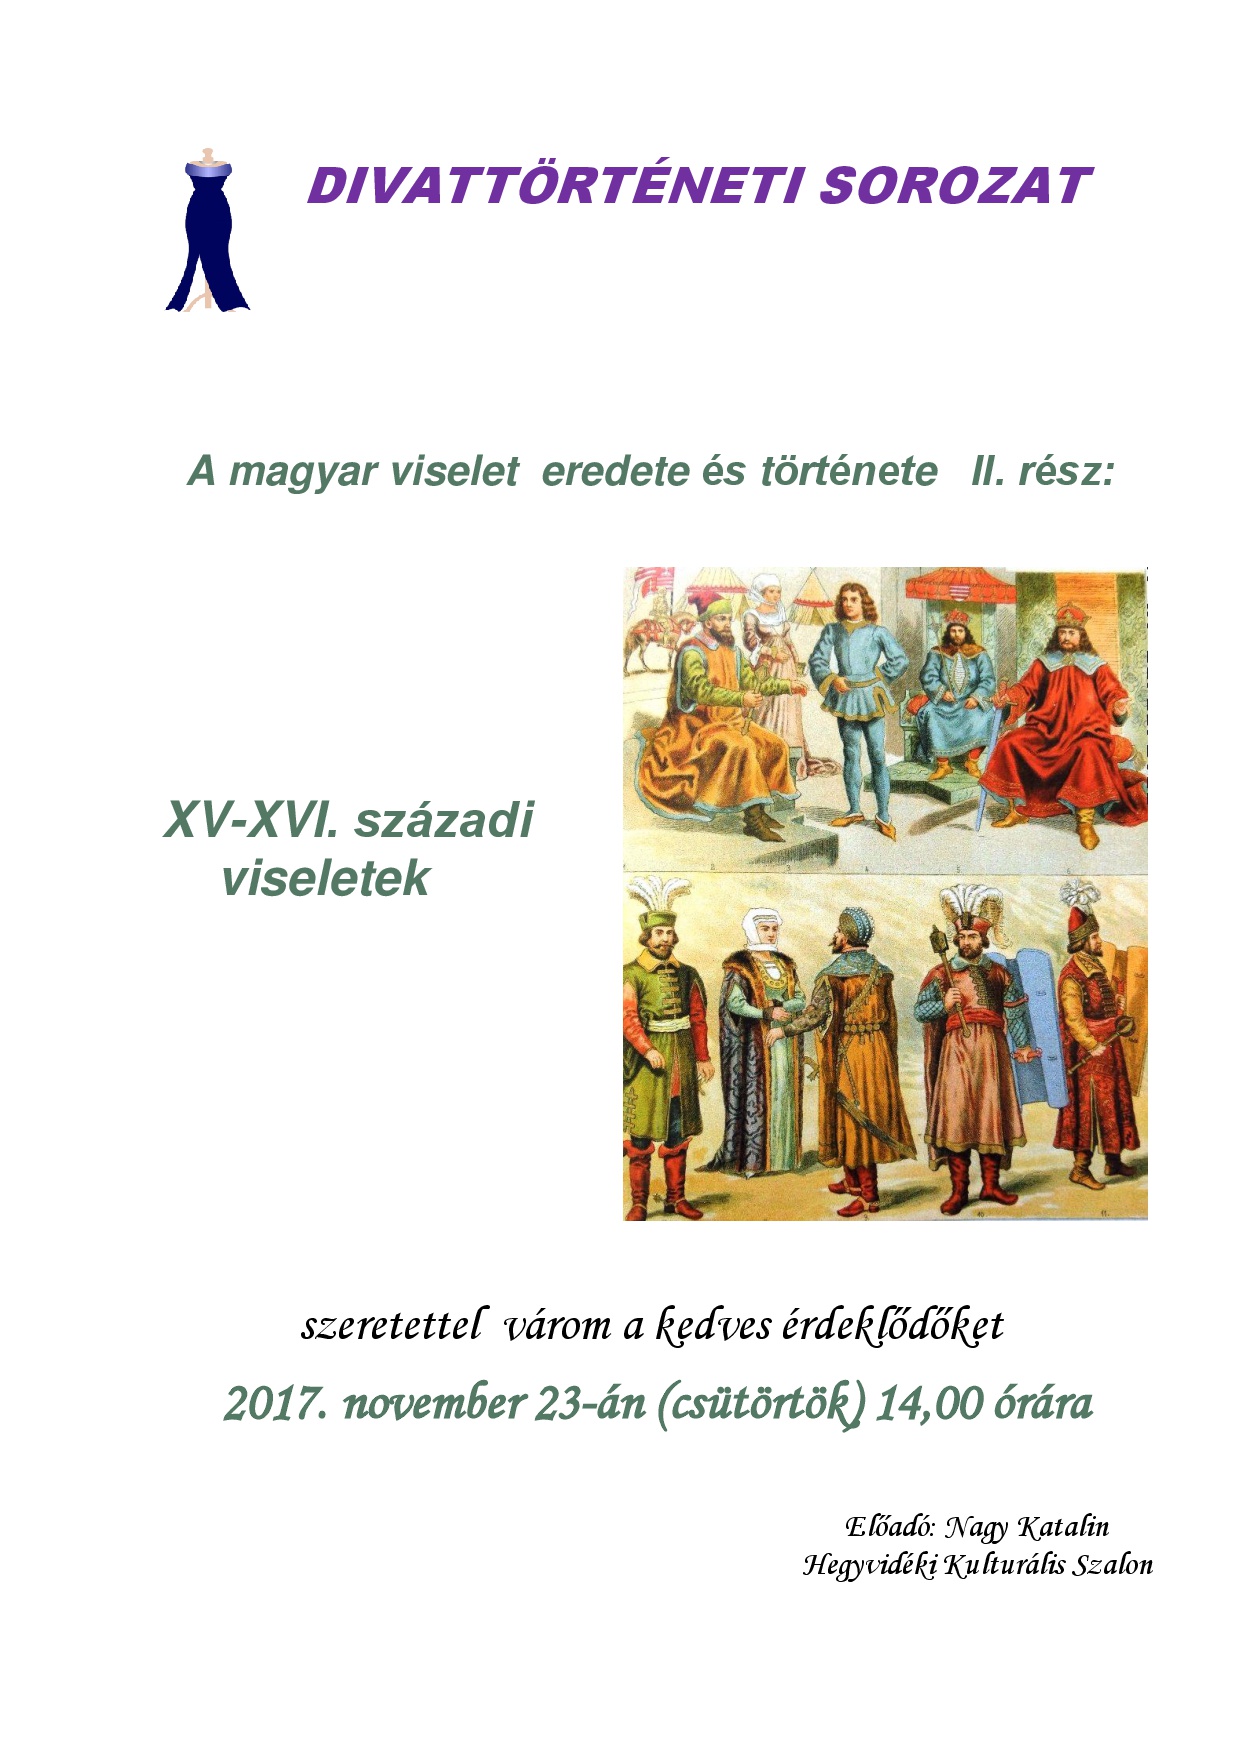 DIVATTORTENETI_SOROZAT_-_Magyar_viselettortenet_II._resz__2017._november_23.